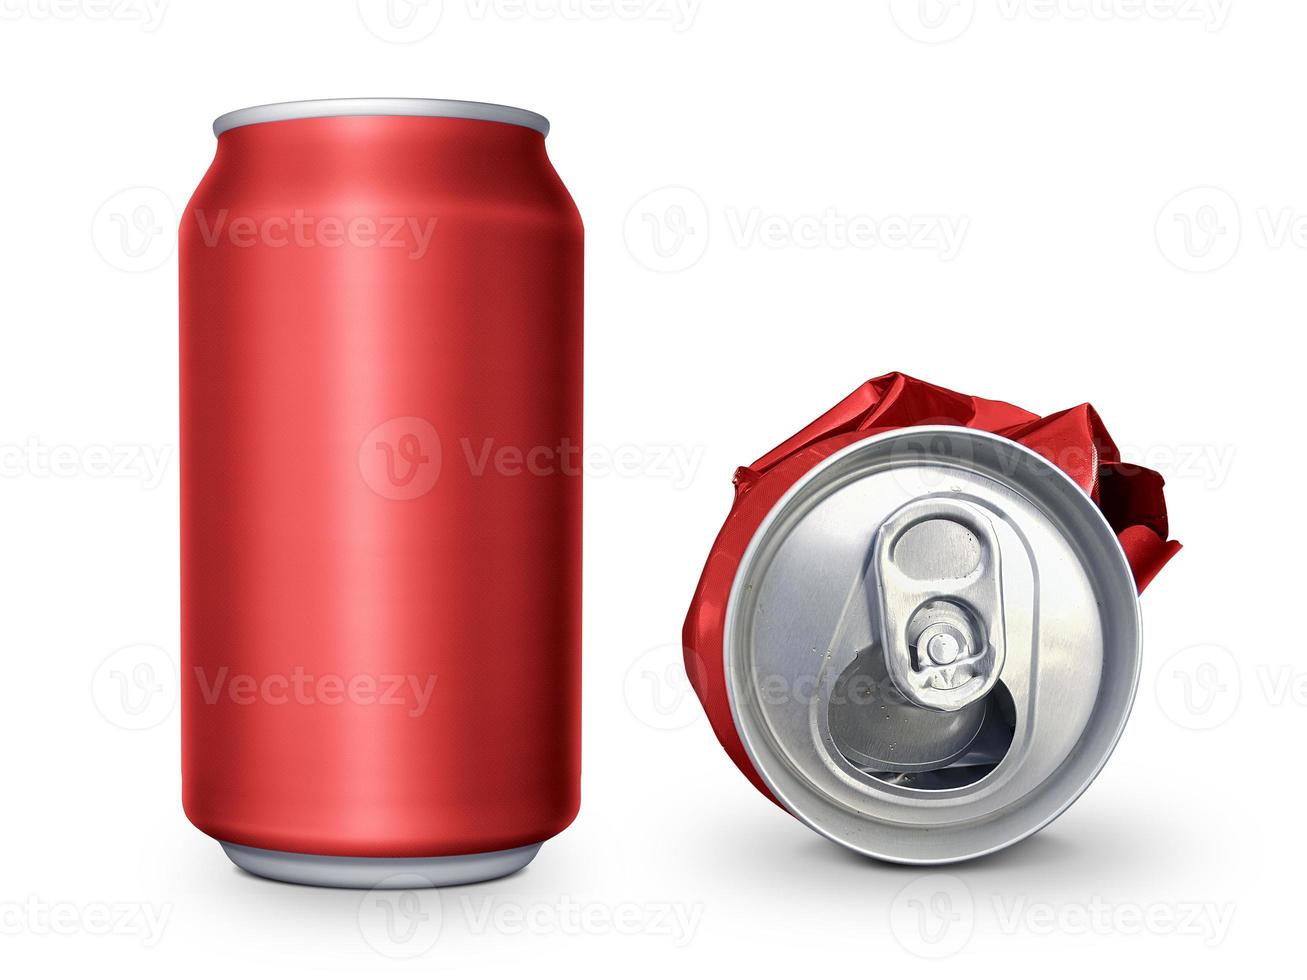 gaseosas en blanco vacías arrugadas y basura de latas de cerveza, latas de chatarra trituradas pueden reciclarse aisladas en fondo blanco foto